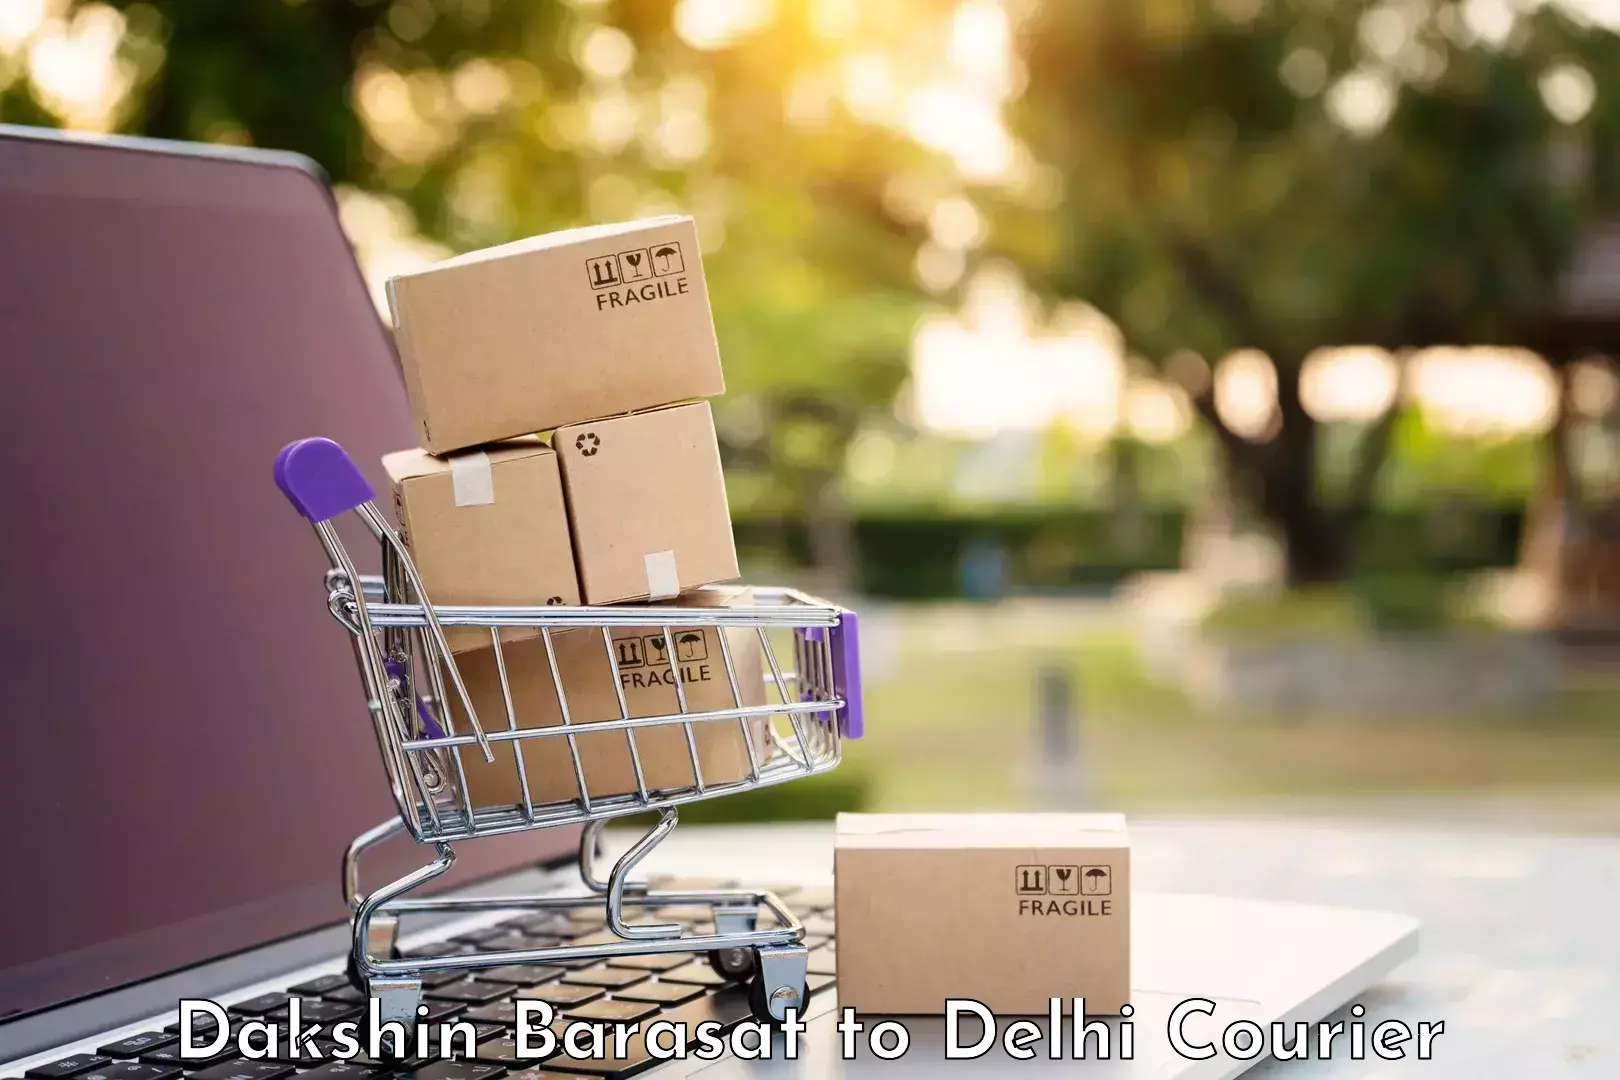 Baggage transport innovation Dakshin Barasat to IIT Delhi